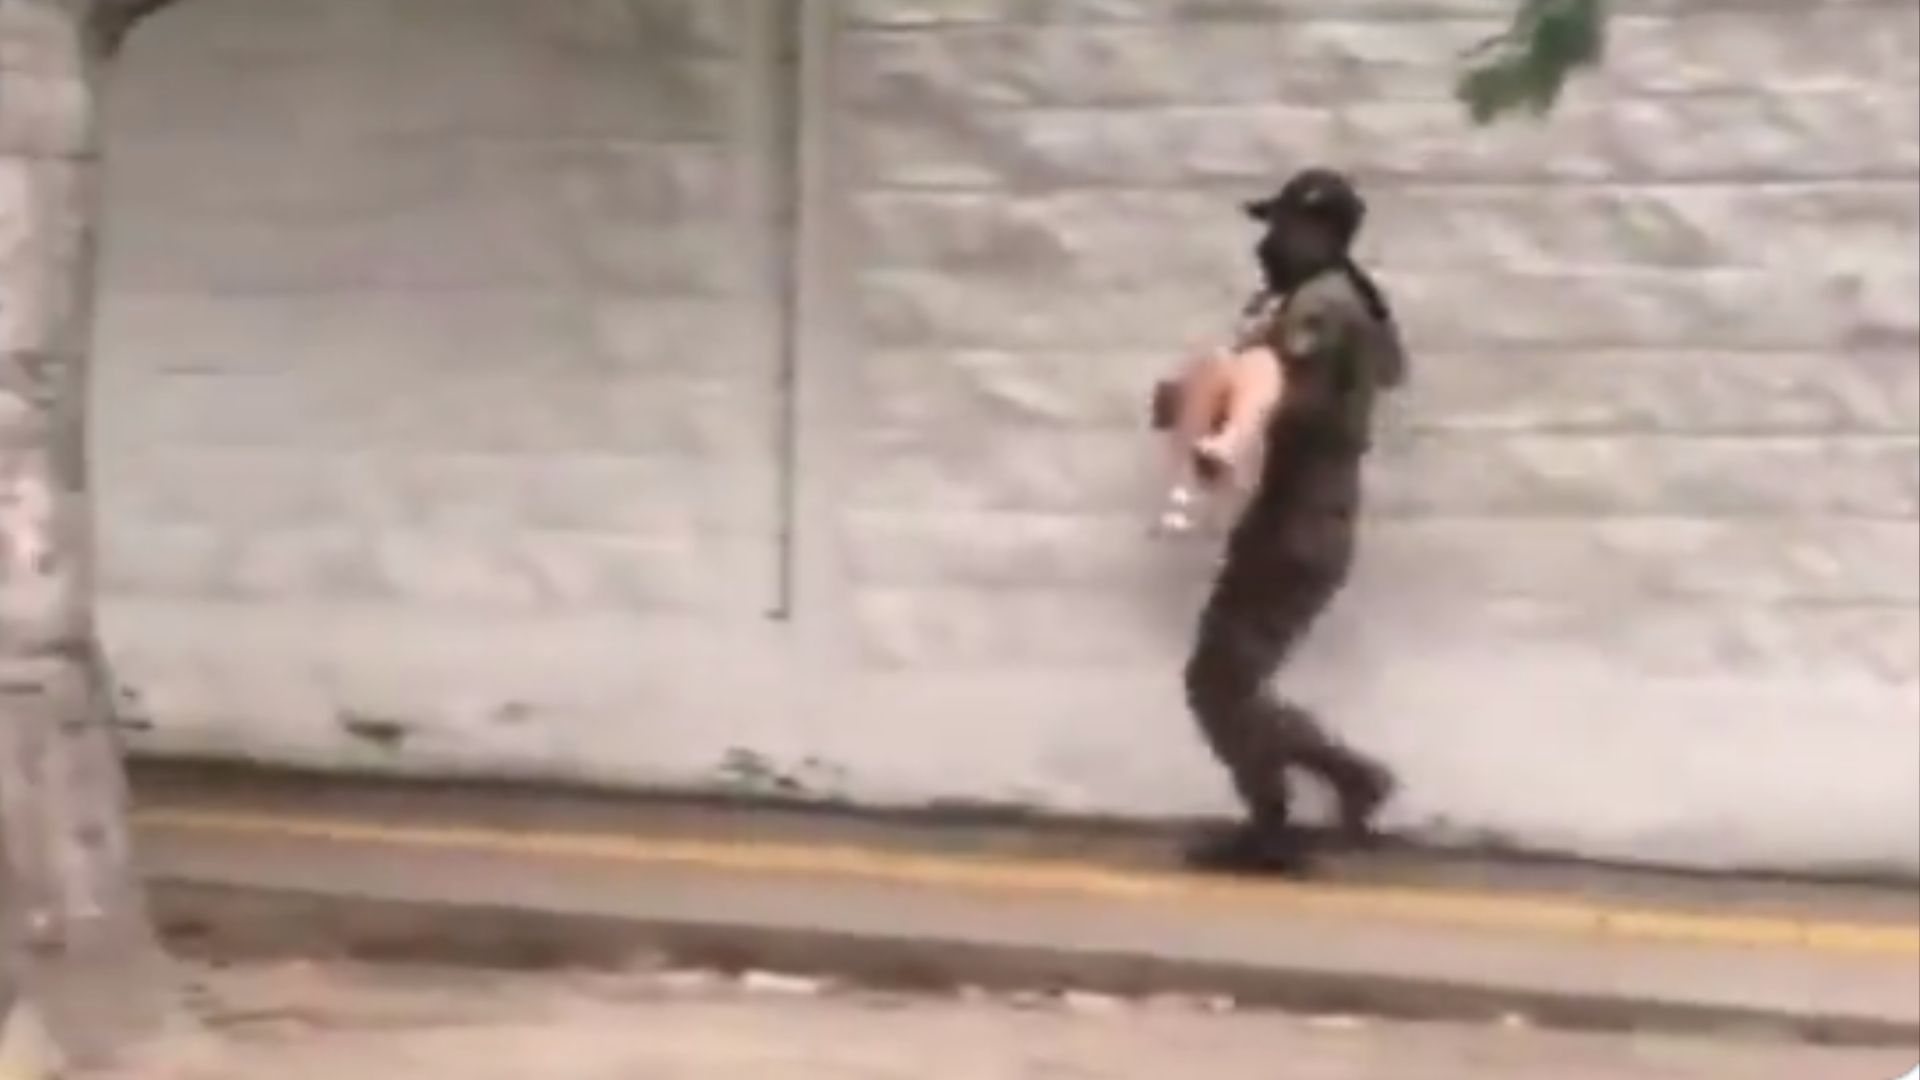 Soldado carga en sus brazos a joven que se desmayo en la calle, el video se viralizo